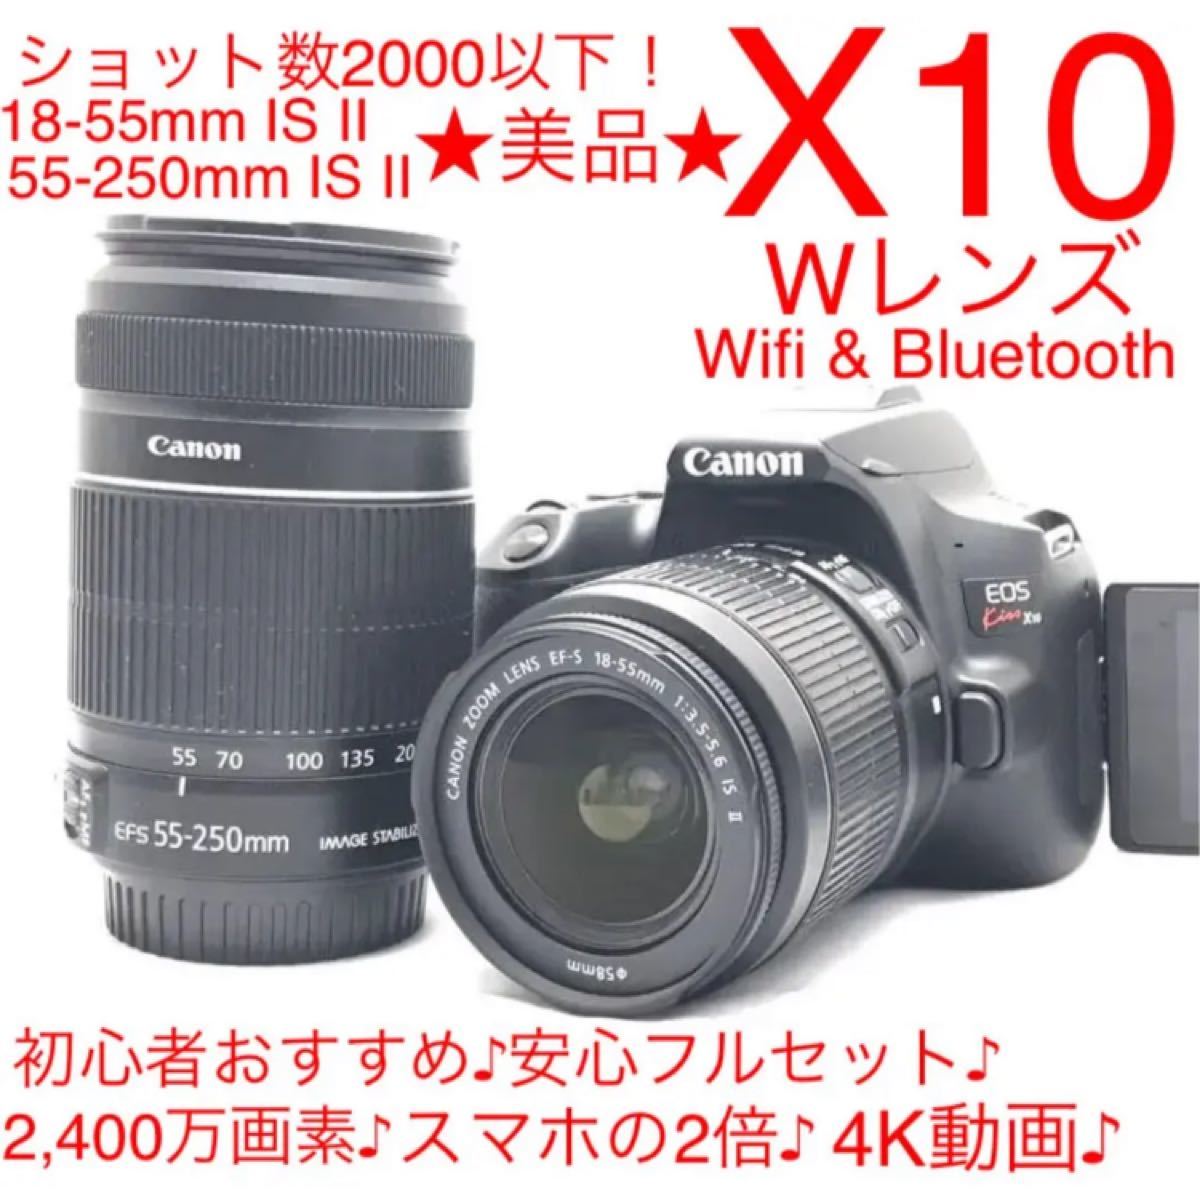 Canon EOS 80D 単焦点レンズセット wifi搭載 スマホとつながる 初心者